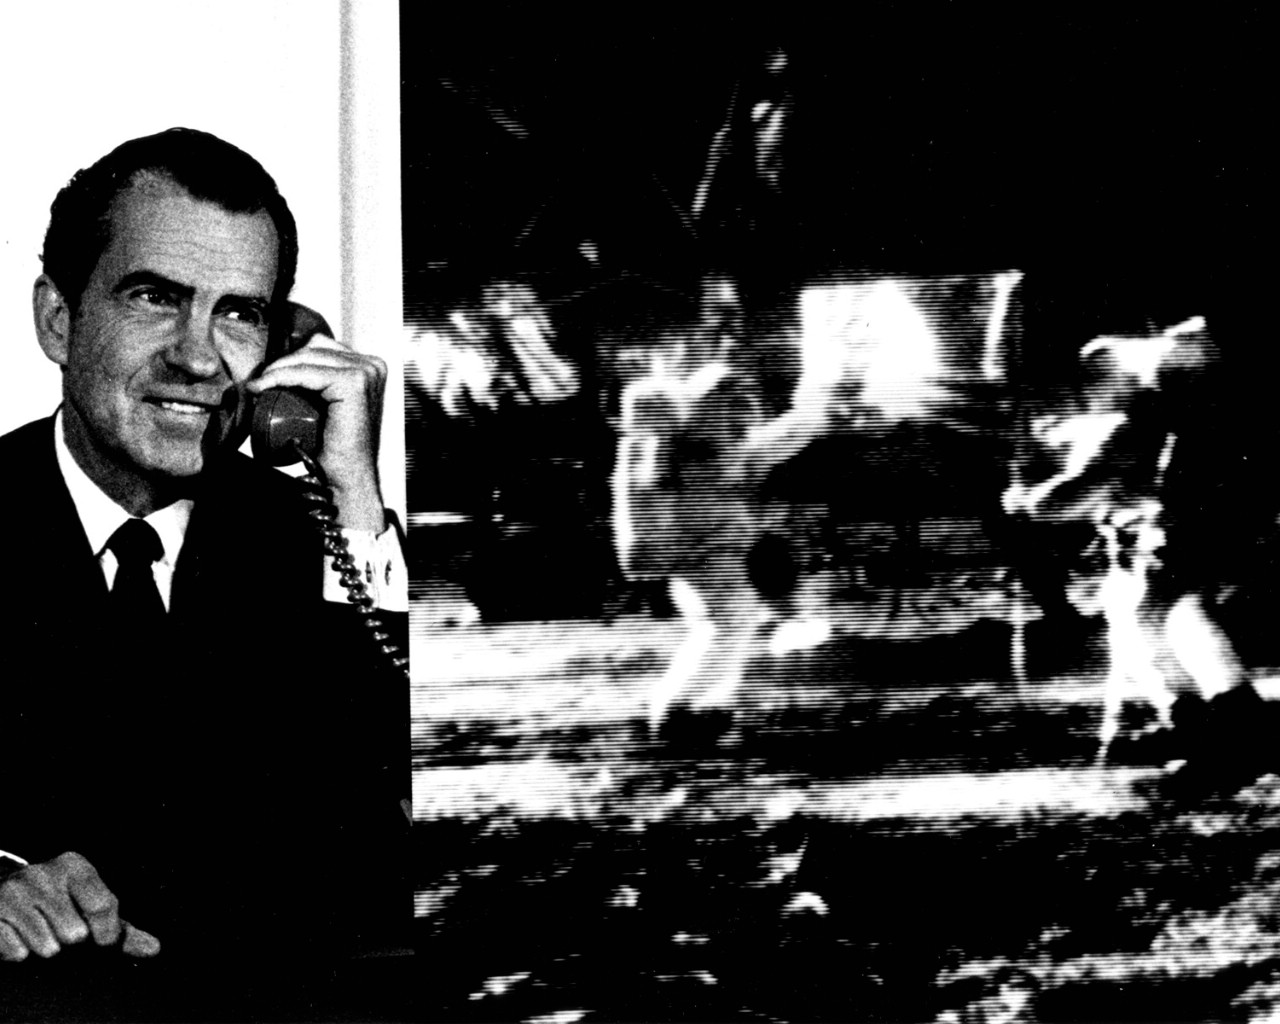 壁纸1280x1024One Giant Leap for Mankind  Nixon Telephones Armstrong on the Moon 尼克松和阿姆斯壮月球对话壁纸 阿波罗11号登月40周年纪念壁纸壁纸 阿波罗11号登月40周年纪念壁纸图片 阿波罗11号登月40周年纪念壁纸素材 人文壁纸 人文图库 人文图片素材桌面壁纸